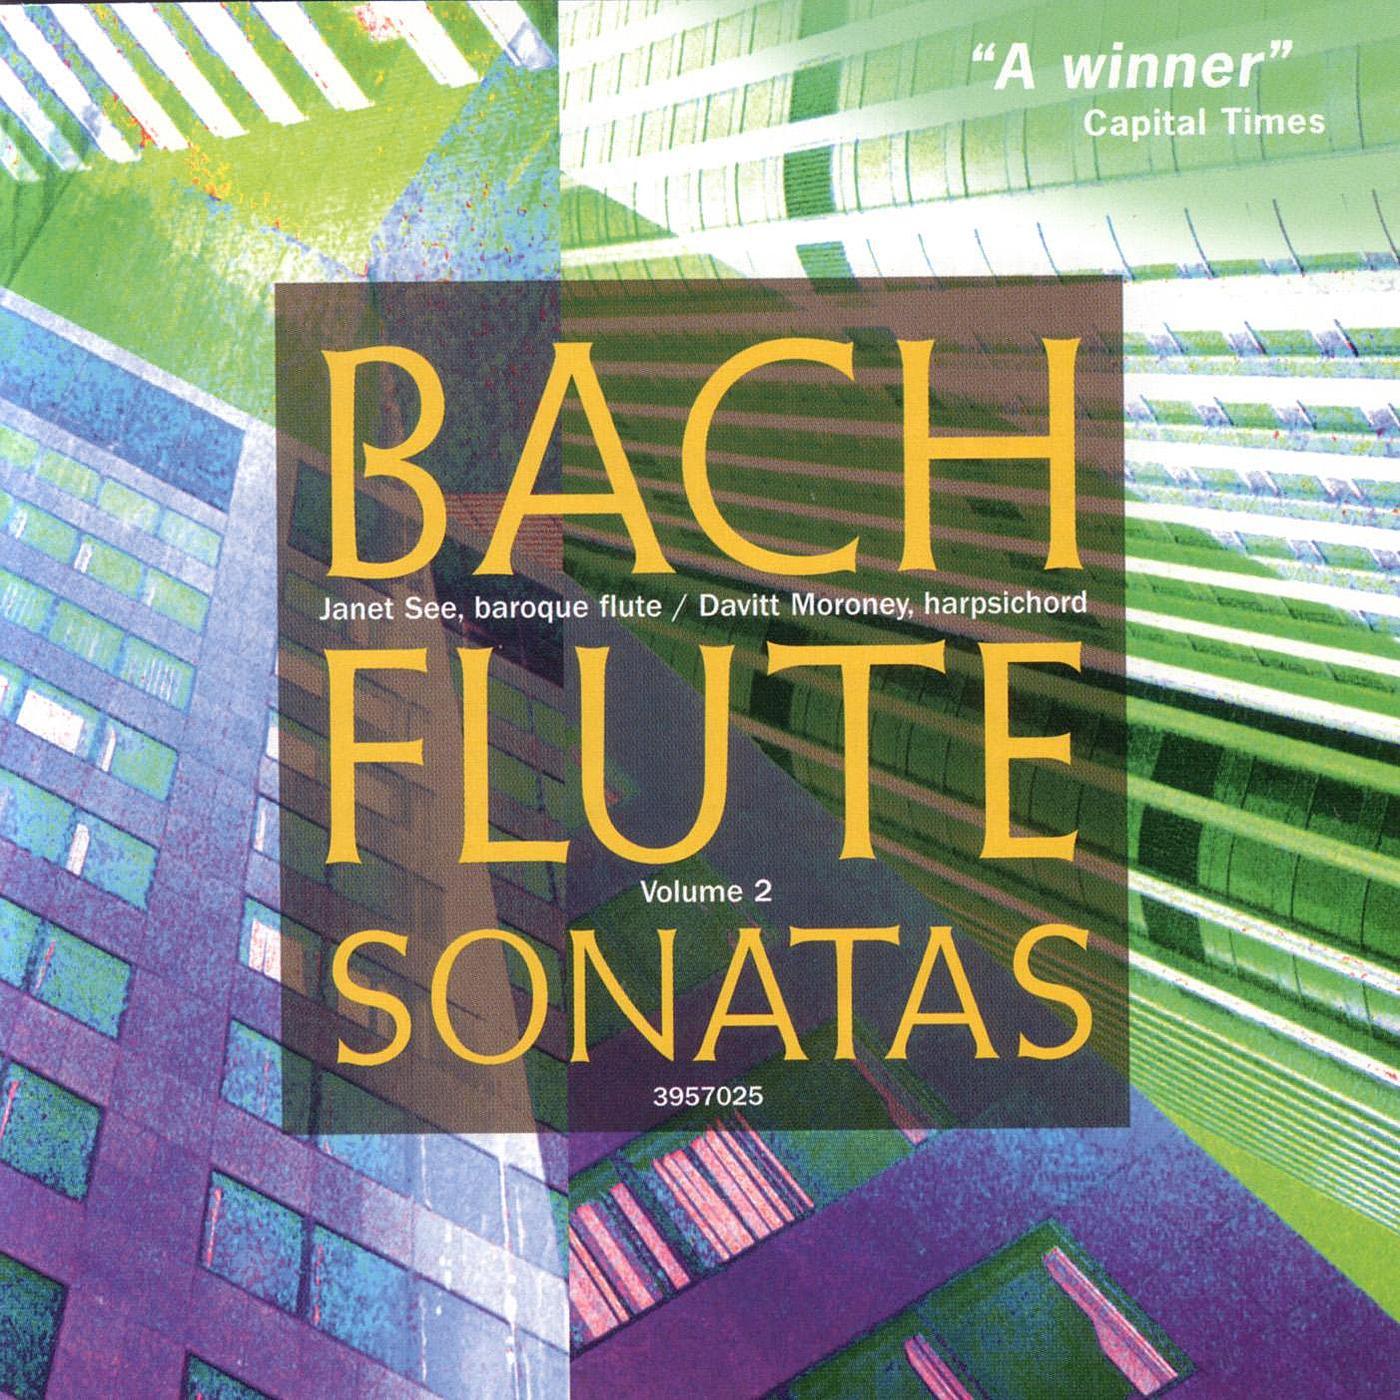 Sonata in C Major, BWV 1033 (solo flute): I. Andante